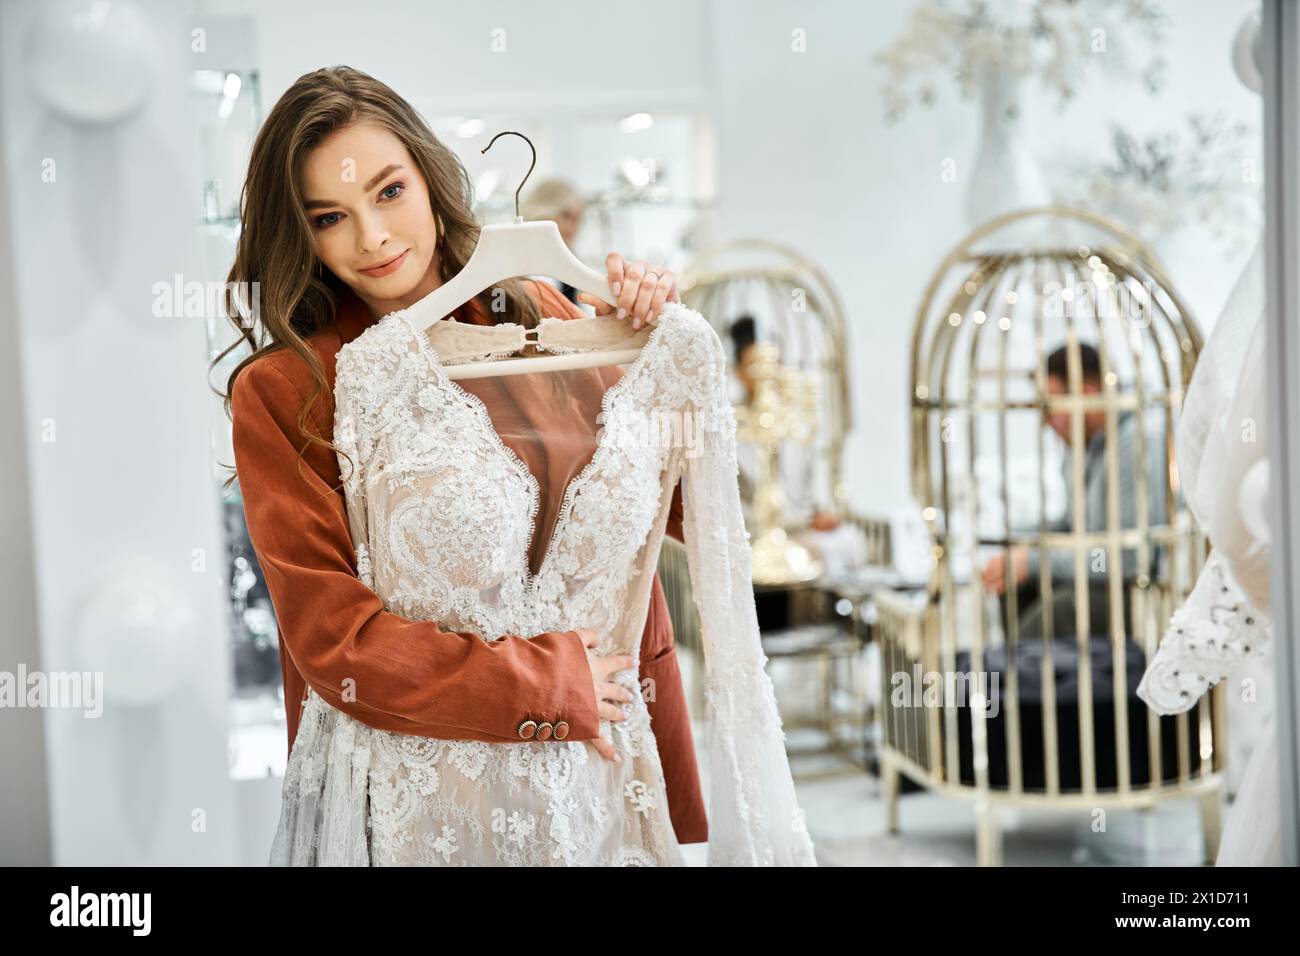 Eine schöne junge Frau hält ein Hochzeitskleid in einem Laden Stockfoto